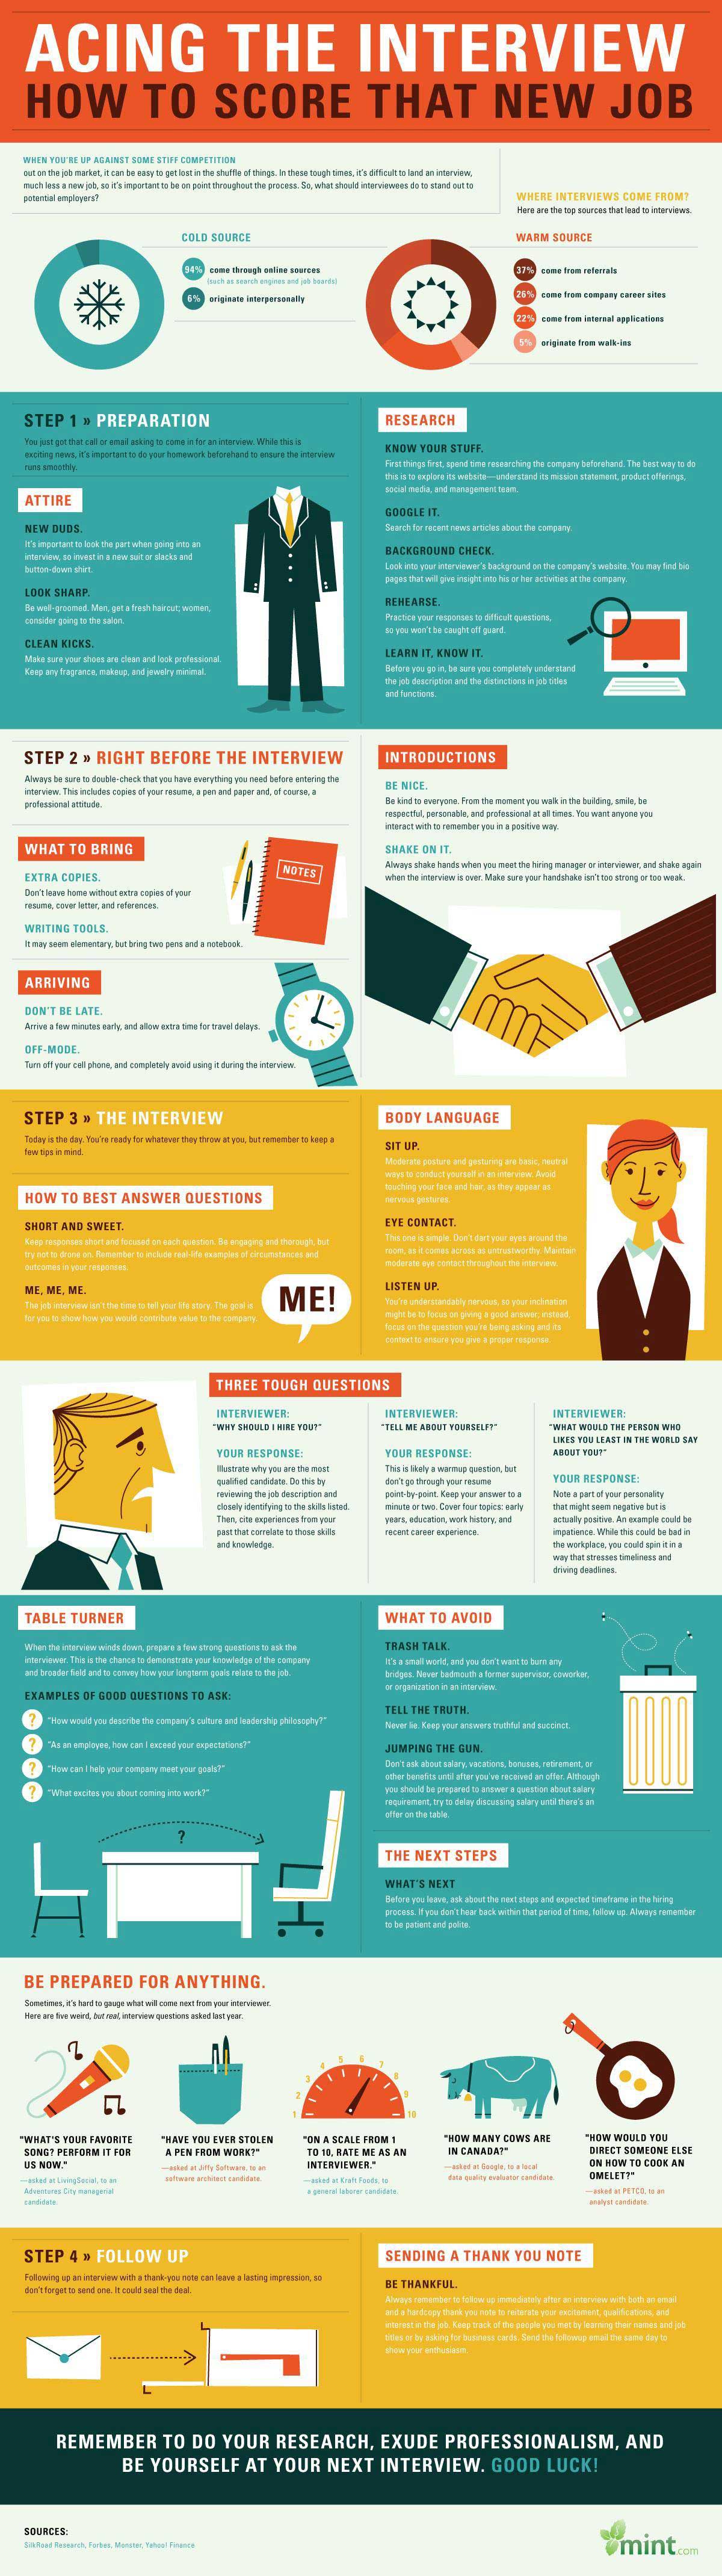 Infographic Tips om die nieuwe baan te scoren 